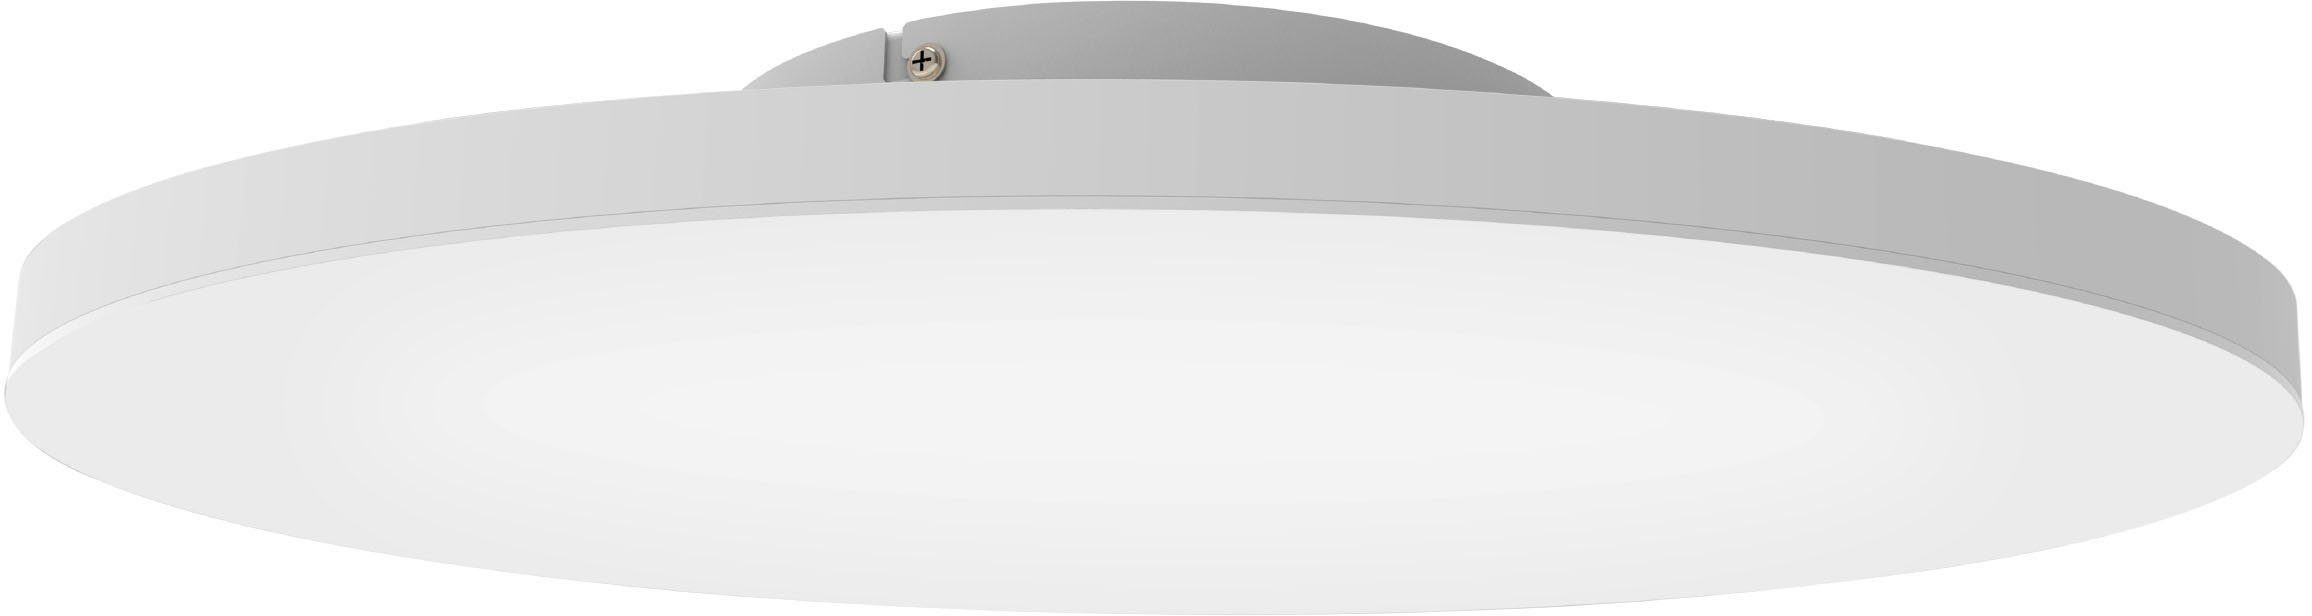 EGLO Deckenleuchte TURCONA-Z, LED fest integriert, warmweiß - kaltweiß, Deckenleuchte in weiß aus Stahl, Alu - 34,2W - warmweiß - kaltweiß | Deckenlampen